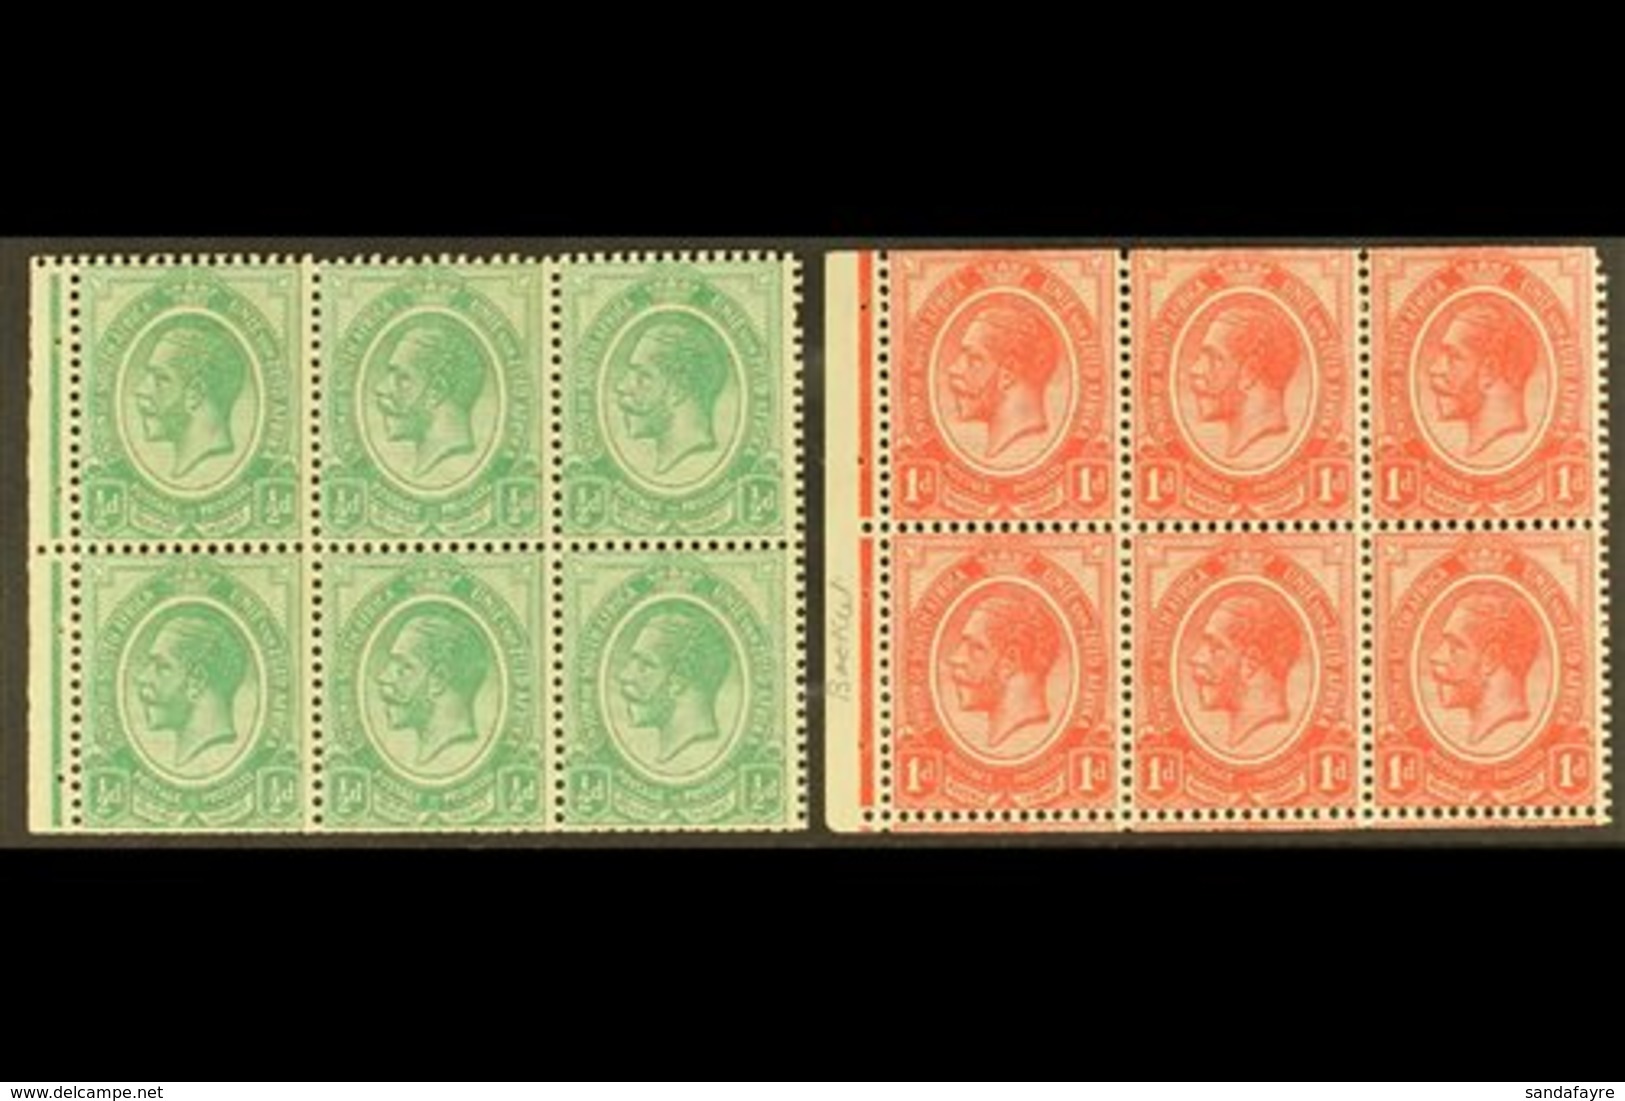 BOOKLET PANES 1913-20 ½d & 1d Panes, Wmk Inverted, SG 3/4, Fine Mint, Trimmed Perfs (2 Panes). For More Images, Please V - Non Classés